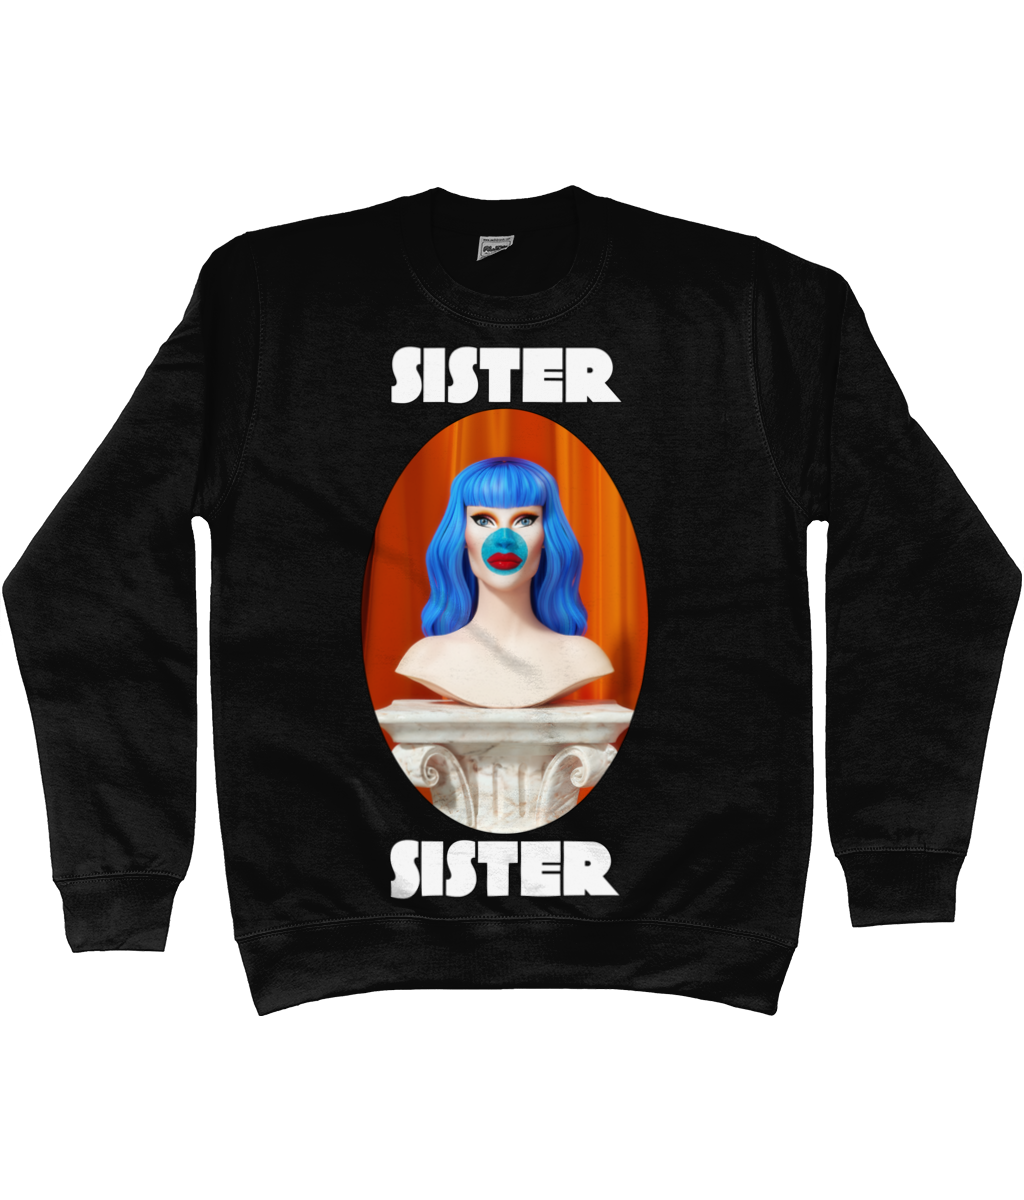 Sister Sister - Bust Sweatshirt